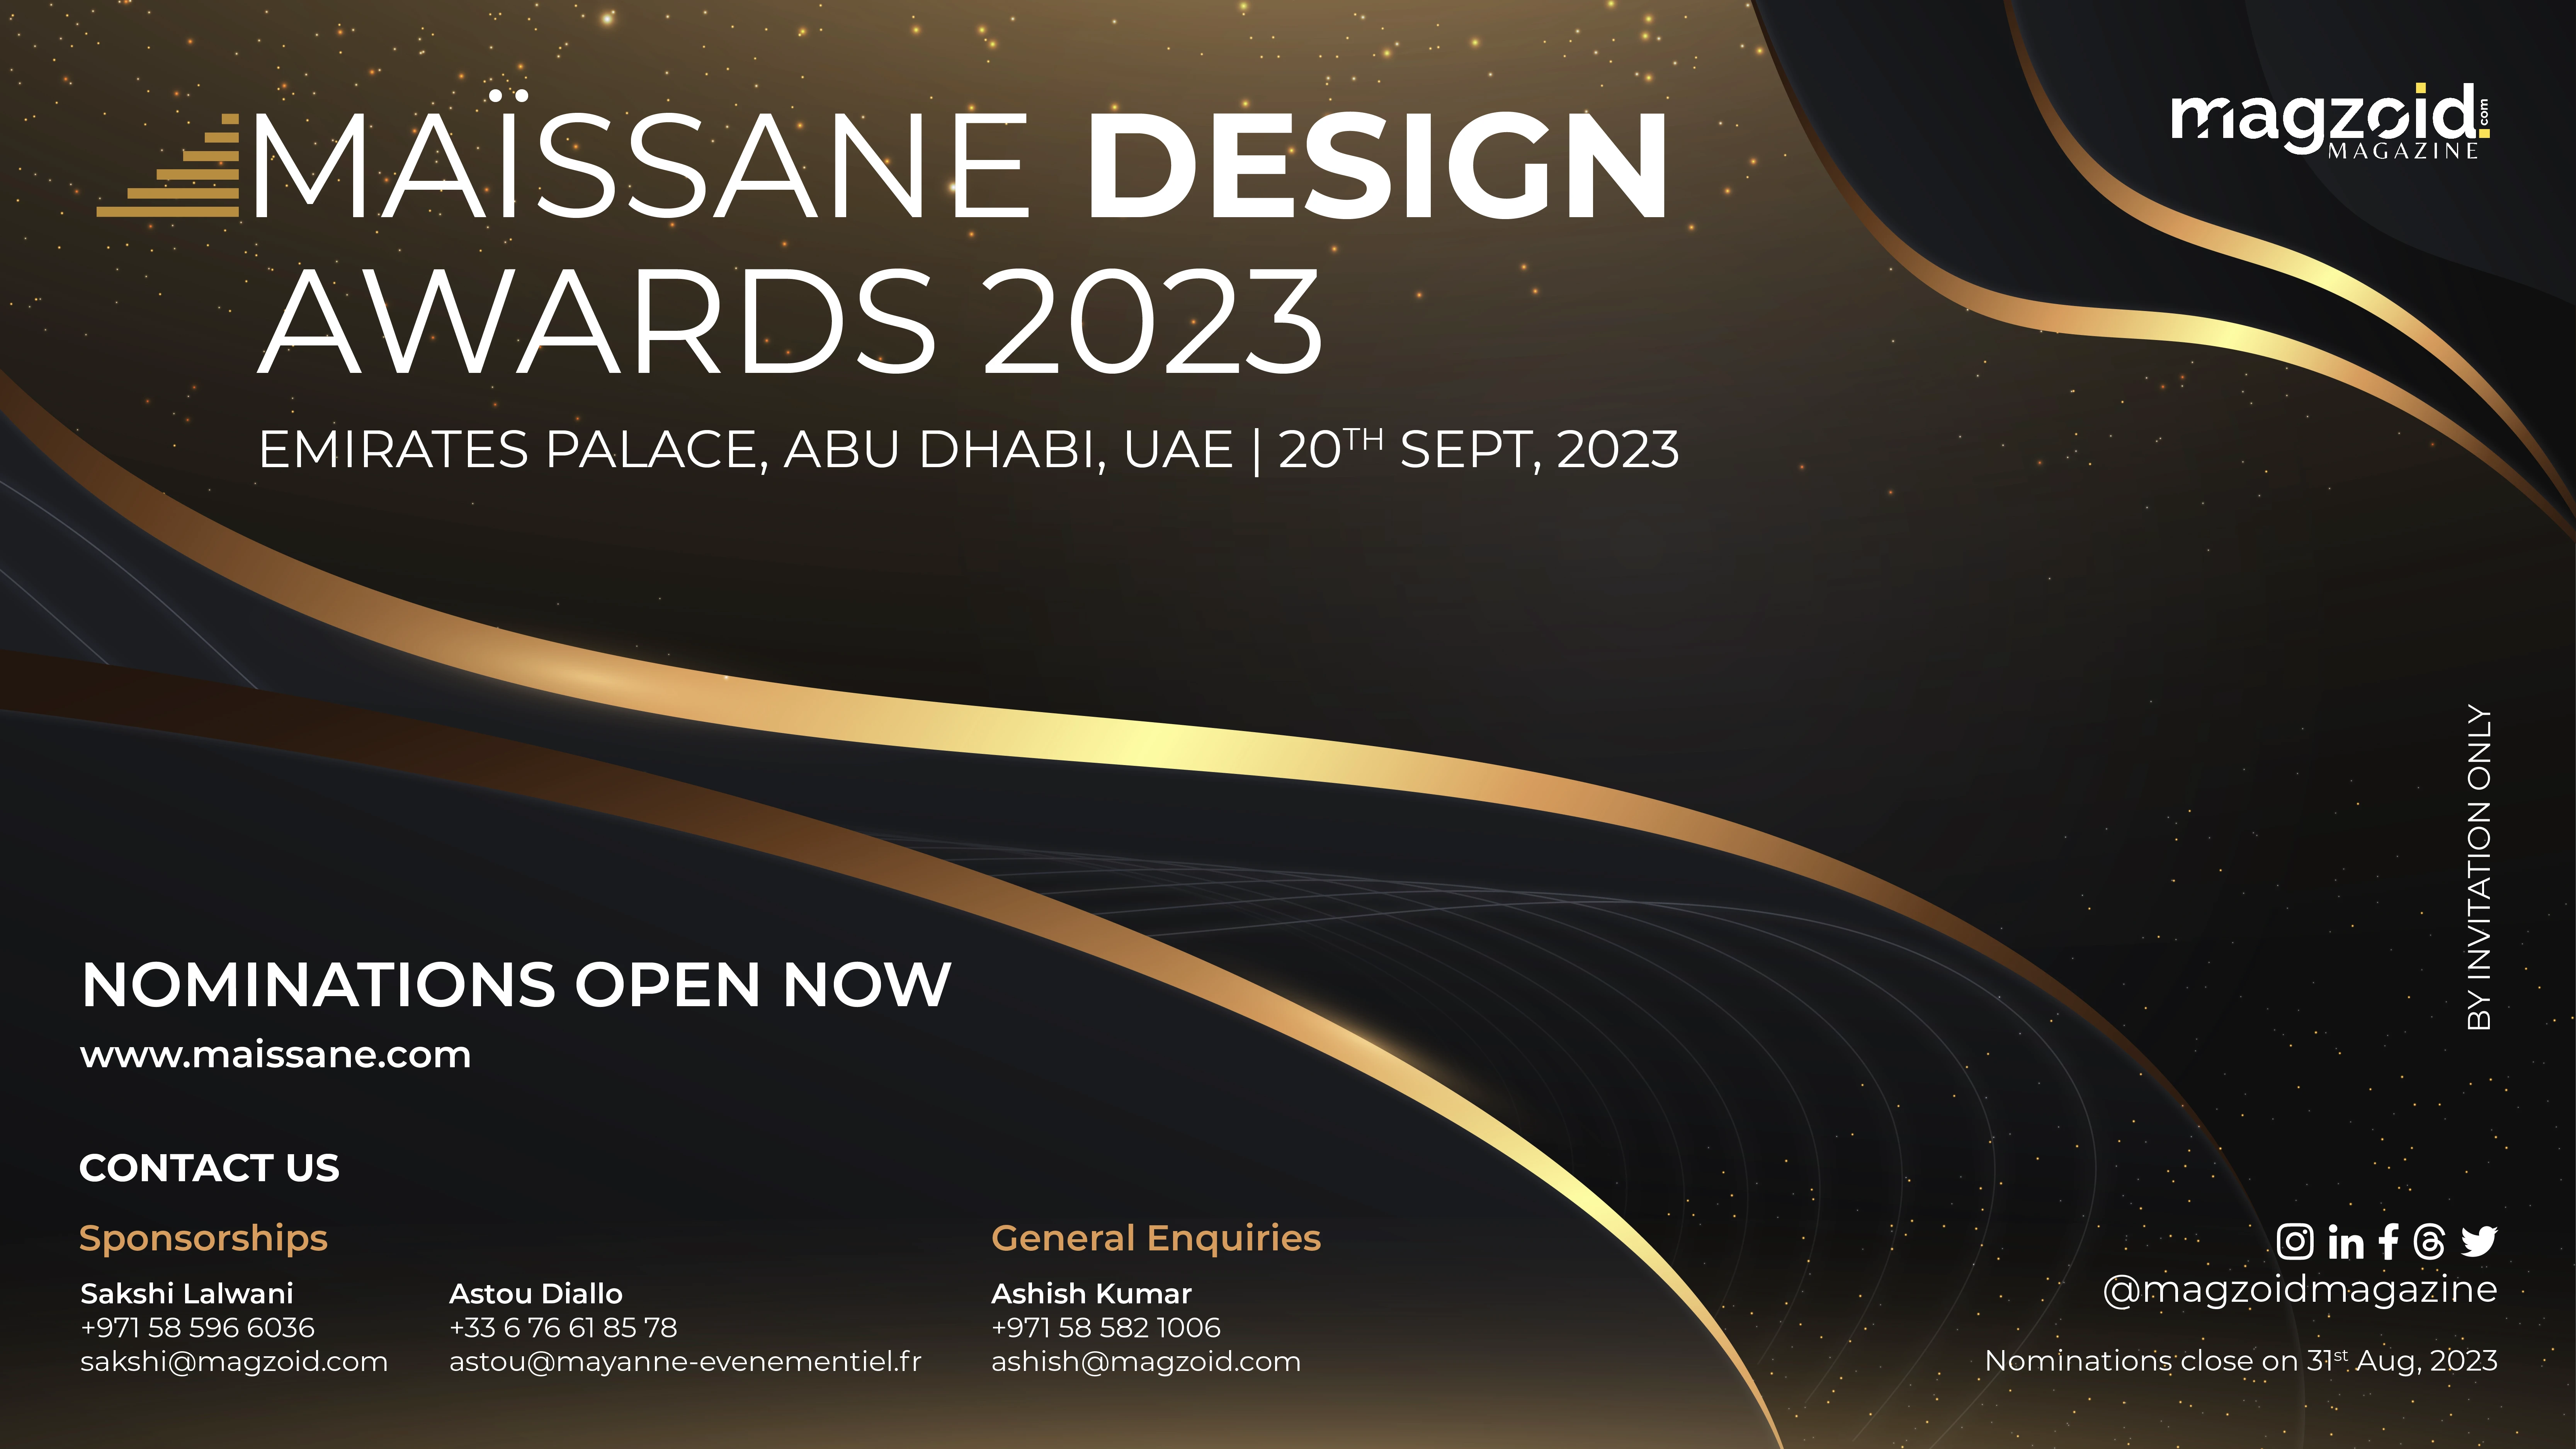 Maïssane Design Awards 2023: Celebrating Design Excellence in the UAE
